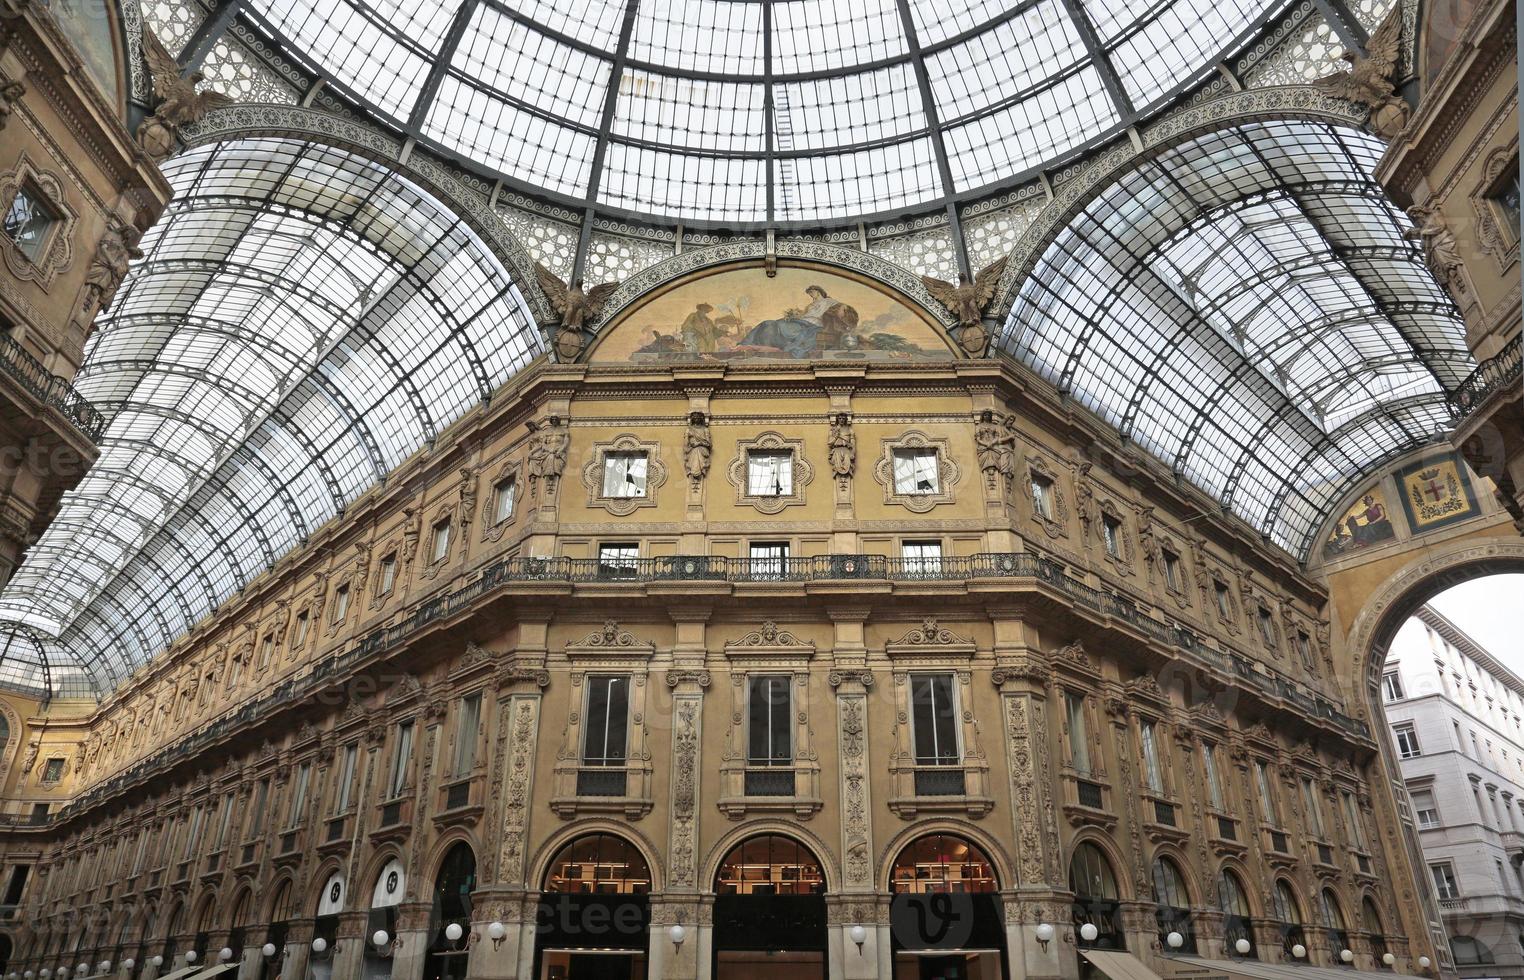 Galleria Vittorio Emanuele II, galerie marchande, Milan, Italie photo